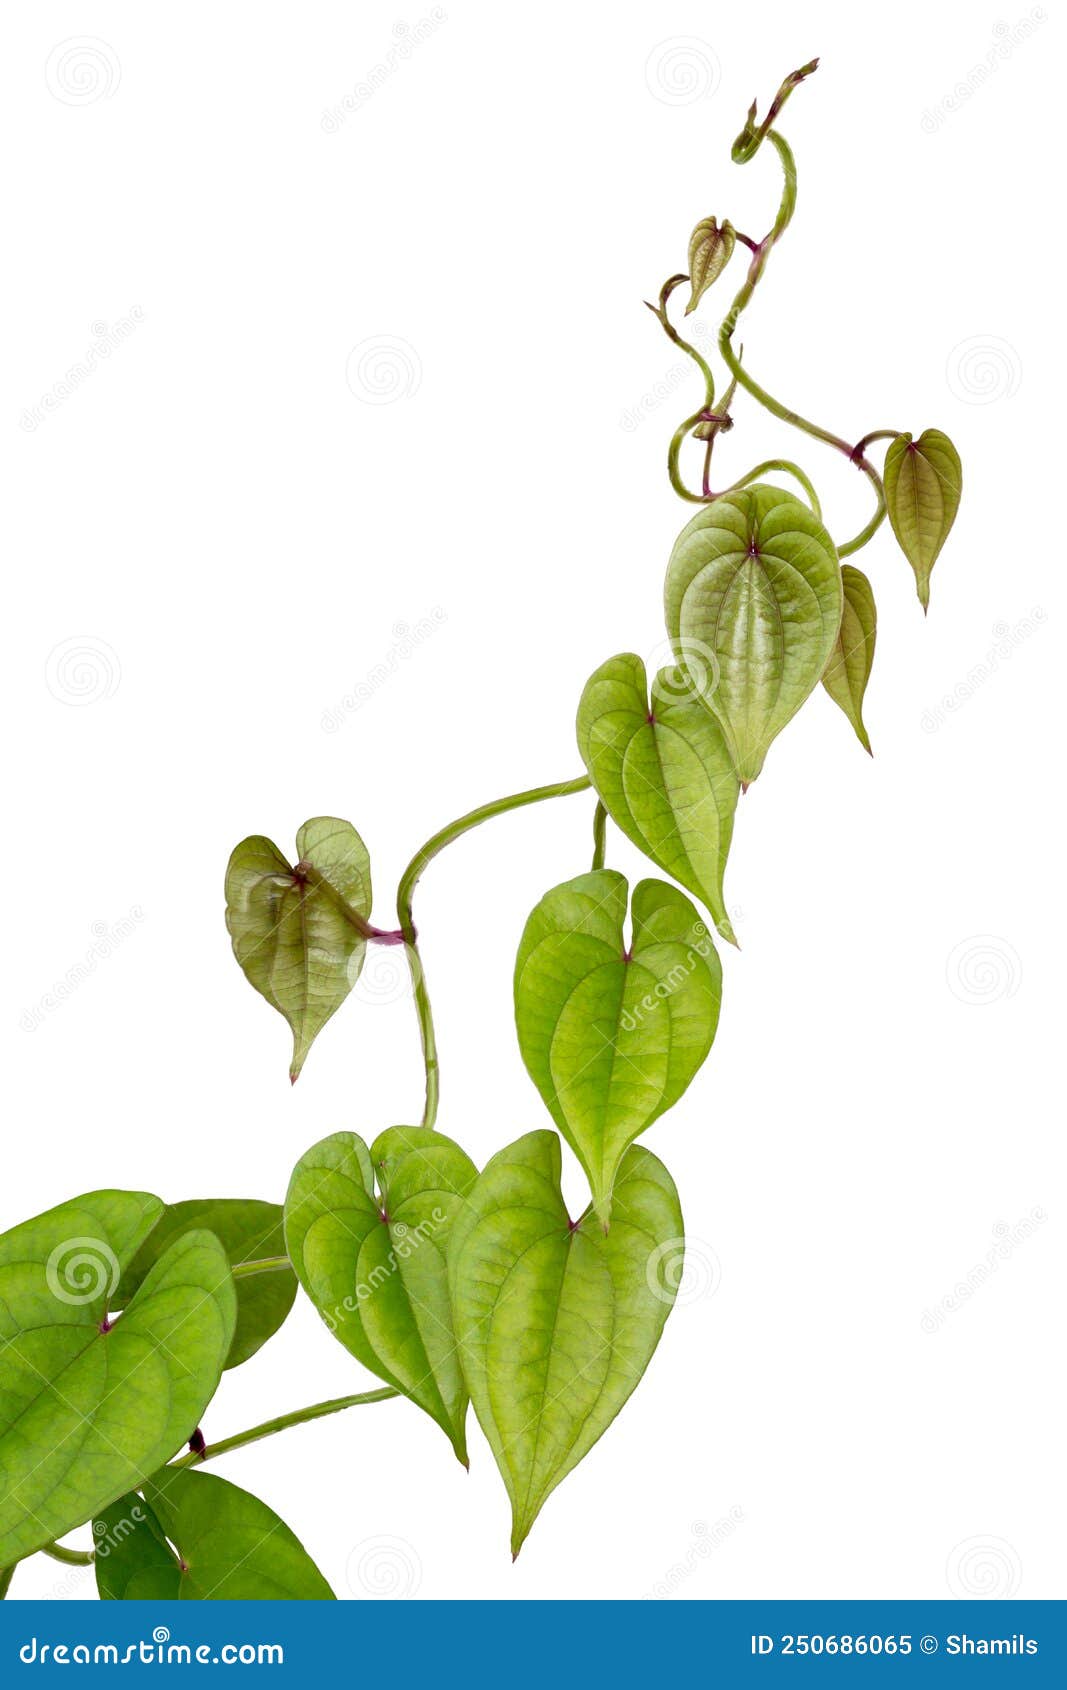 Purple Yam, Ube or Greater Yam Plant Vine on White Stock Image - Image ...